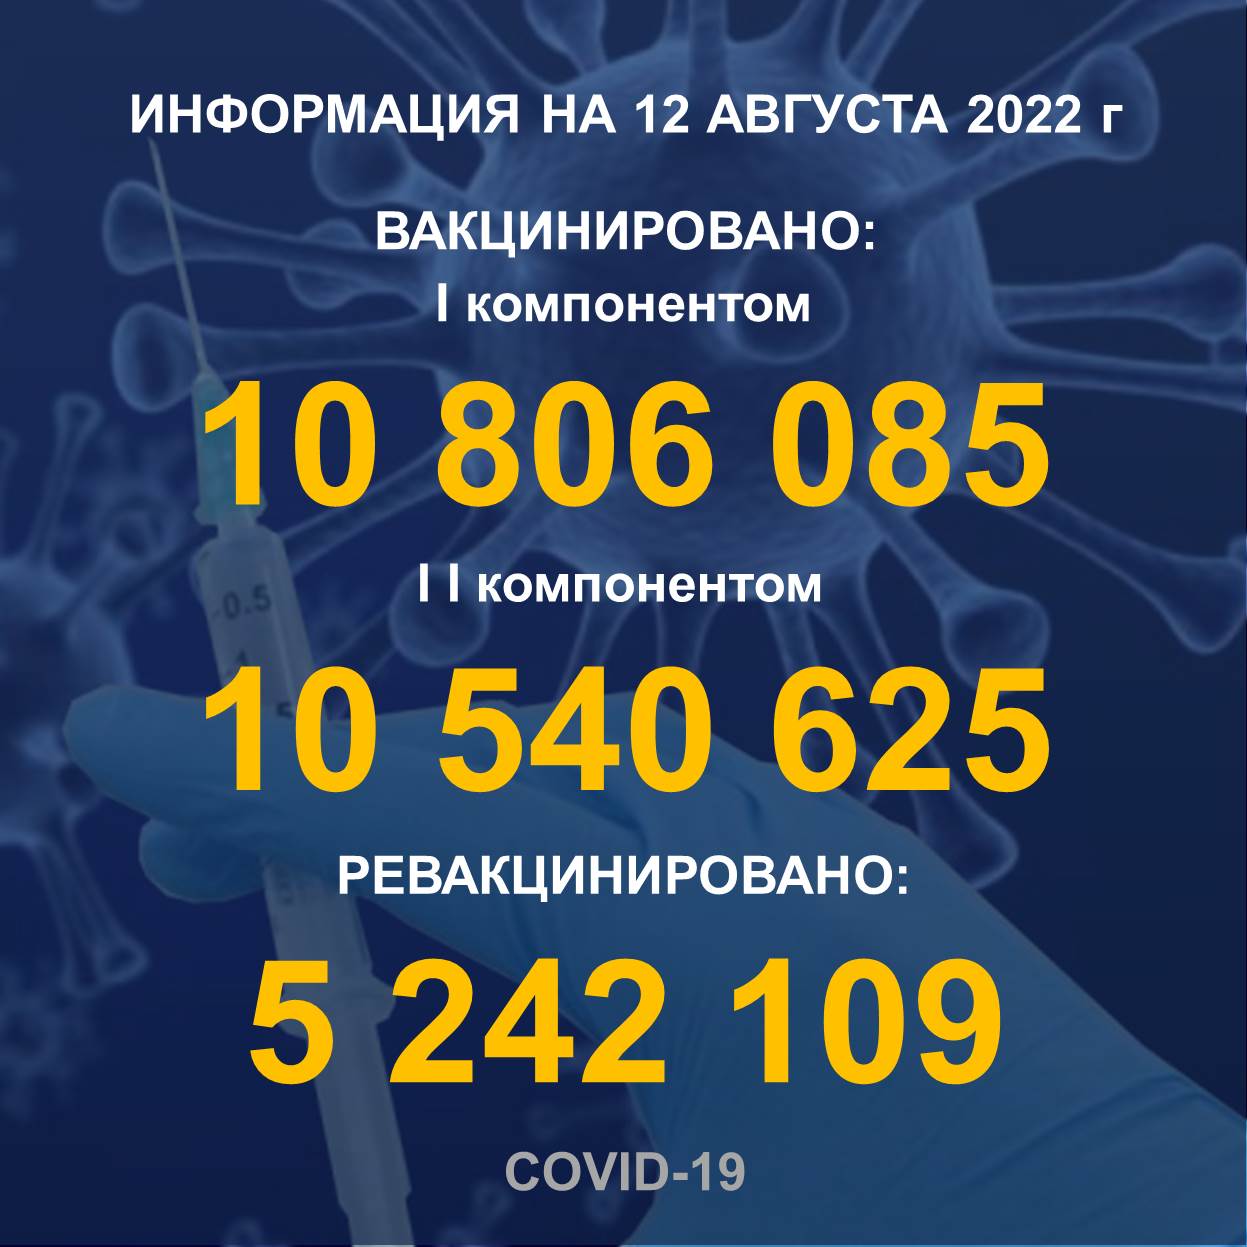 I компонентом 10 806 085 человек провакцинировано в Казахстане на 12.08.2022 г, II компонентом 10 540 625 человек. Ревакцинировано – 5 242 109